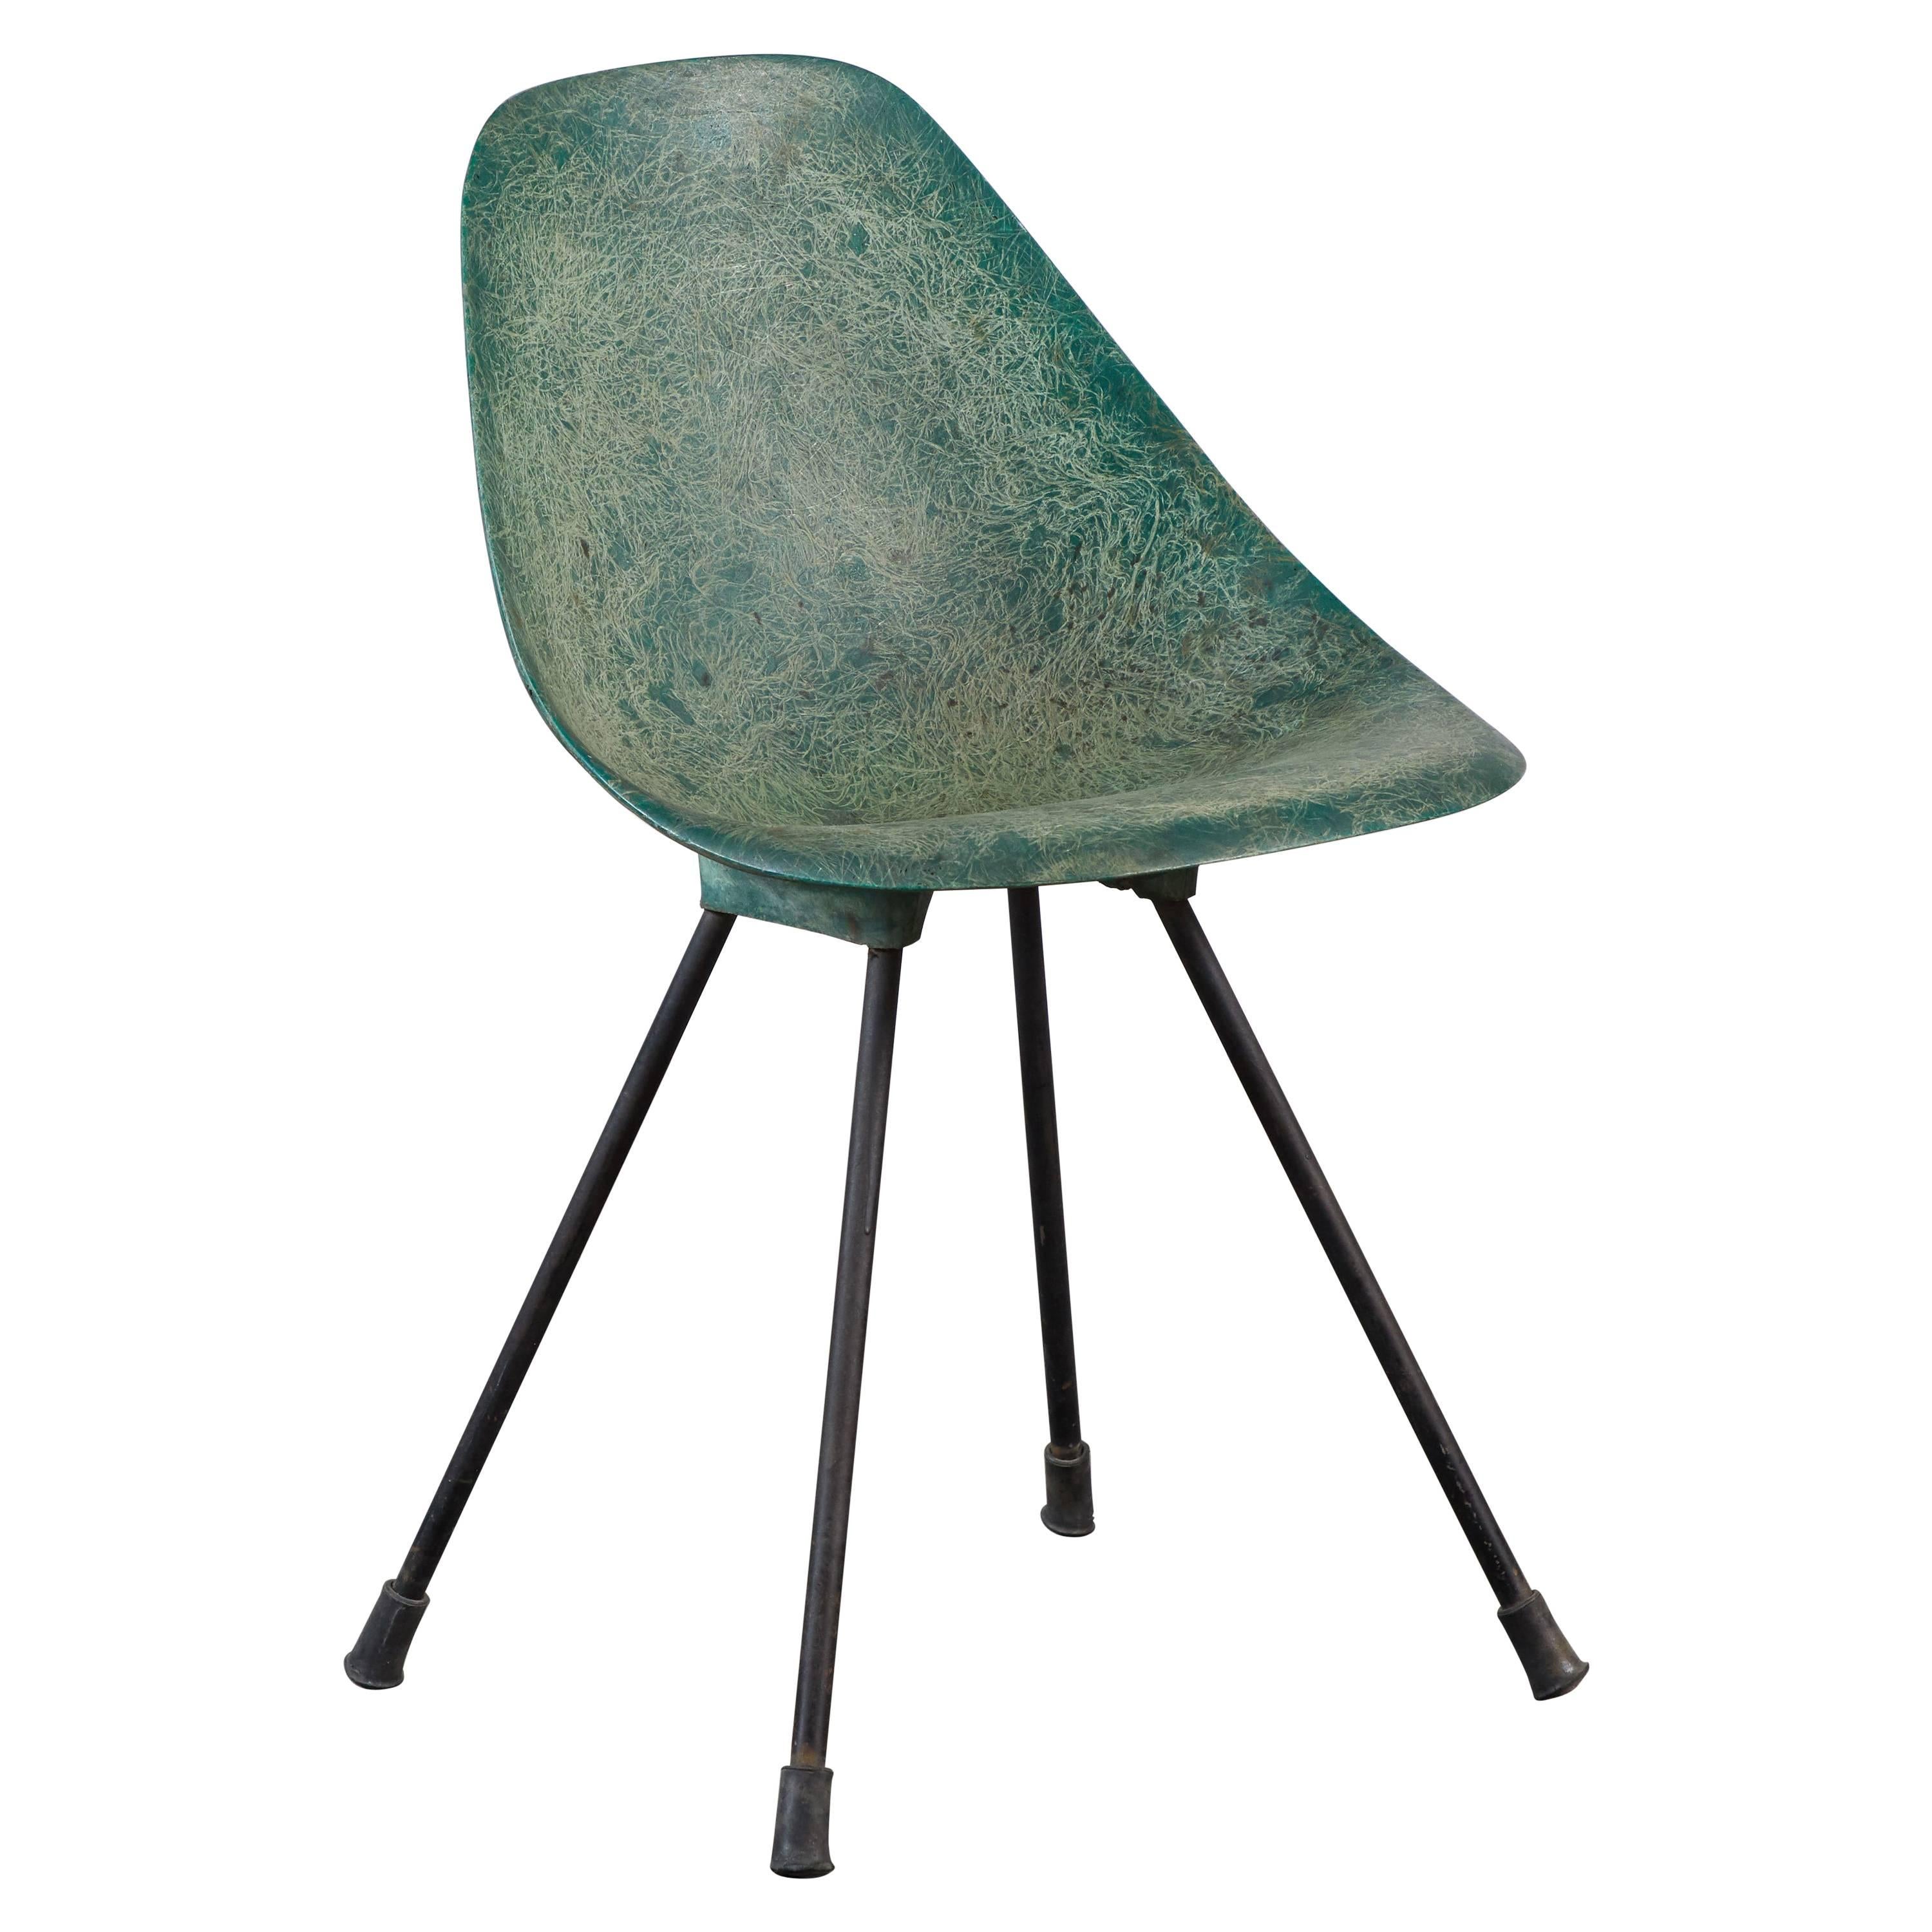 Fiberglass Chair by Jean-René Picard